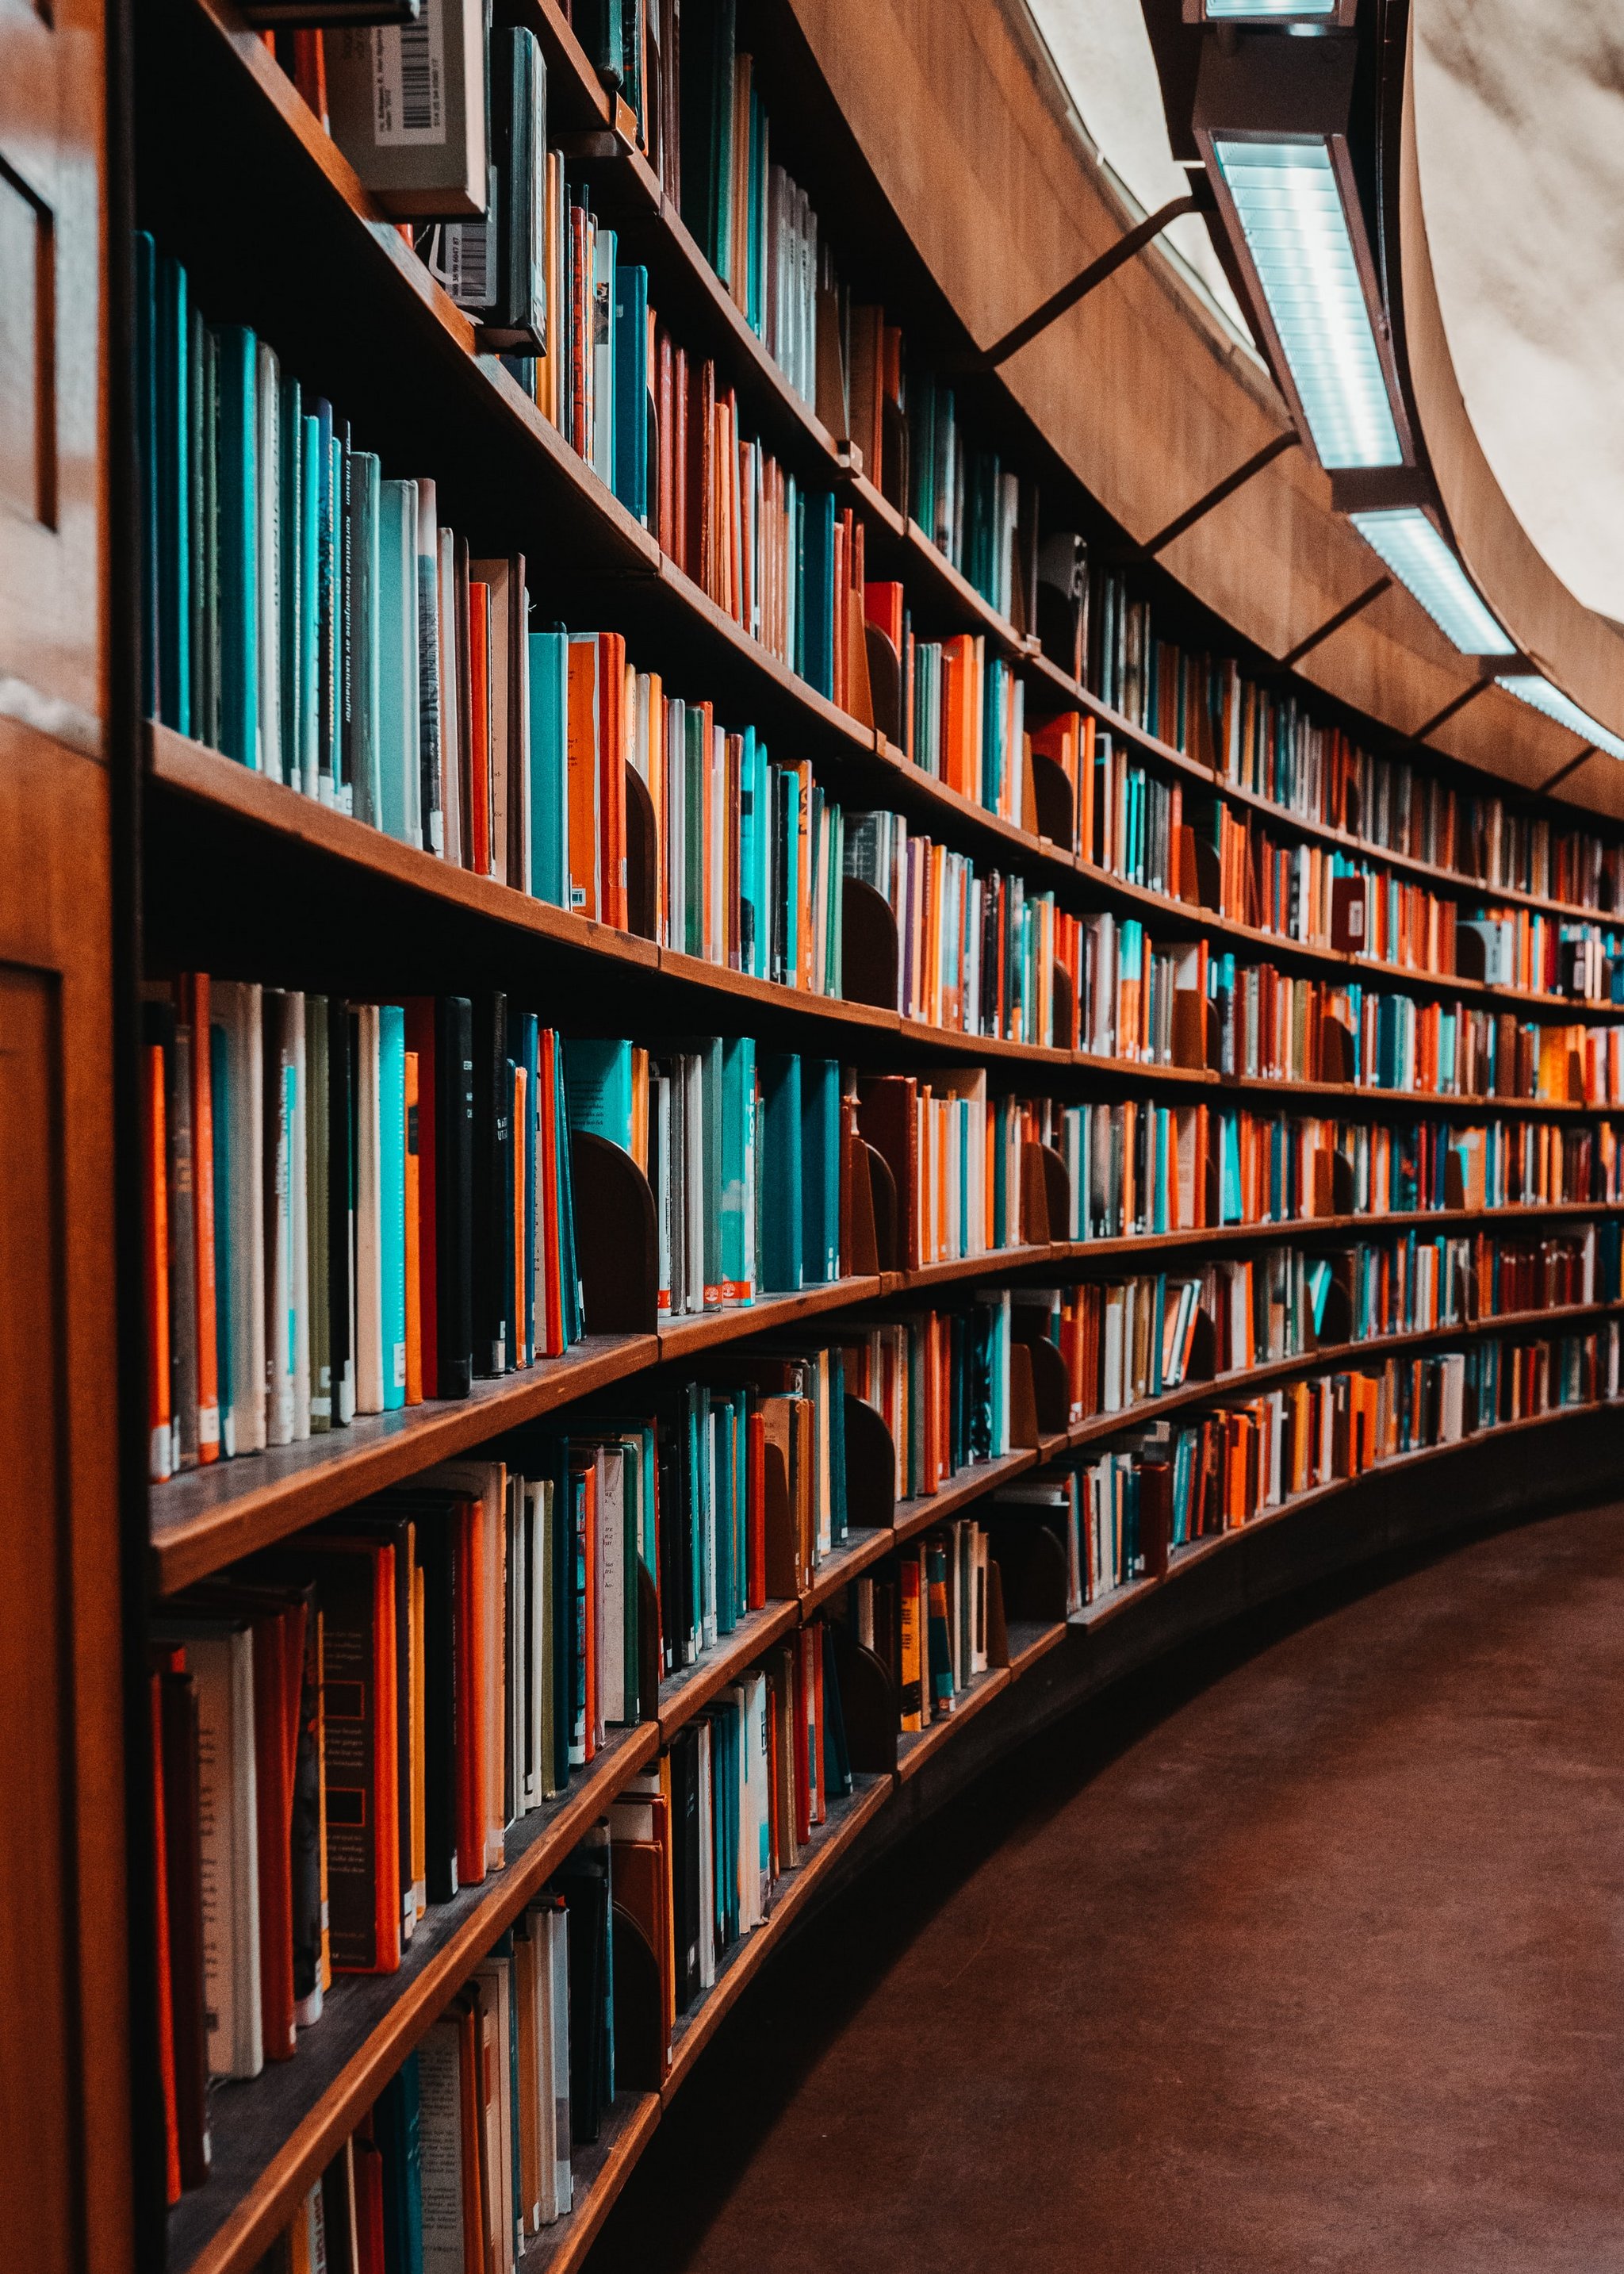 Das Bild zeigt Regalreihen mit Büchern in einer Bibliothek